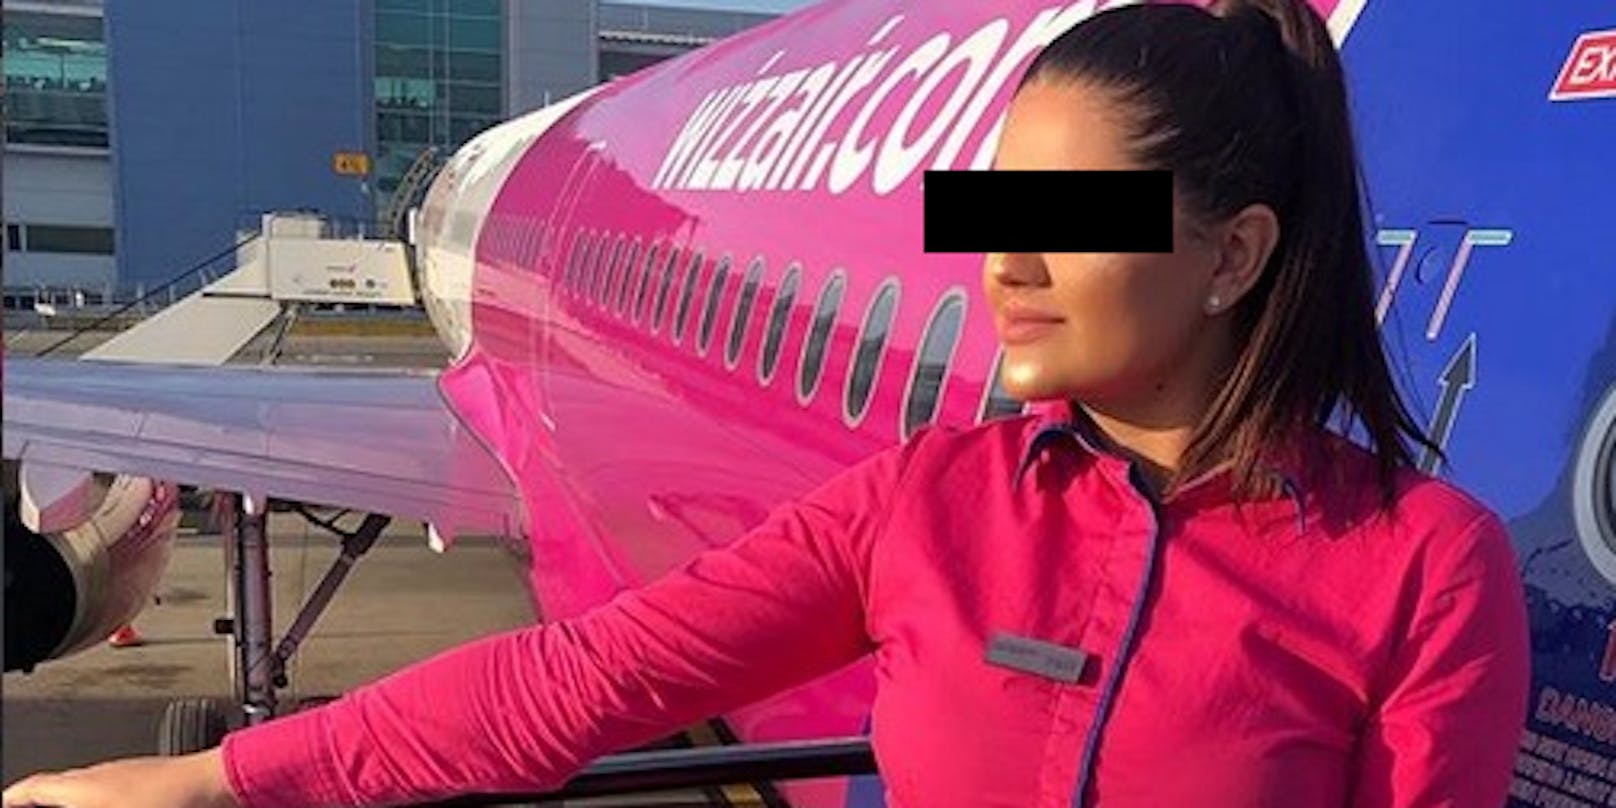 Posieren auf Instagram ist für die ehemalige Stewardess nun Geschichte.